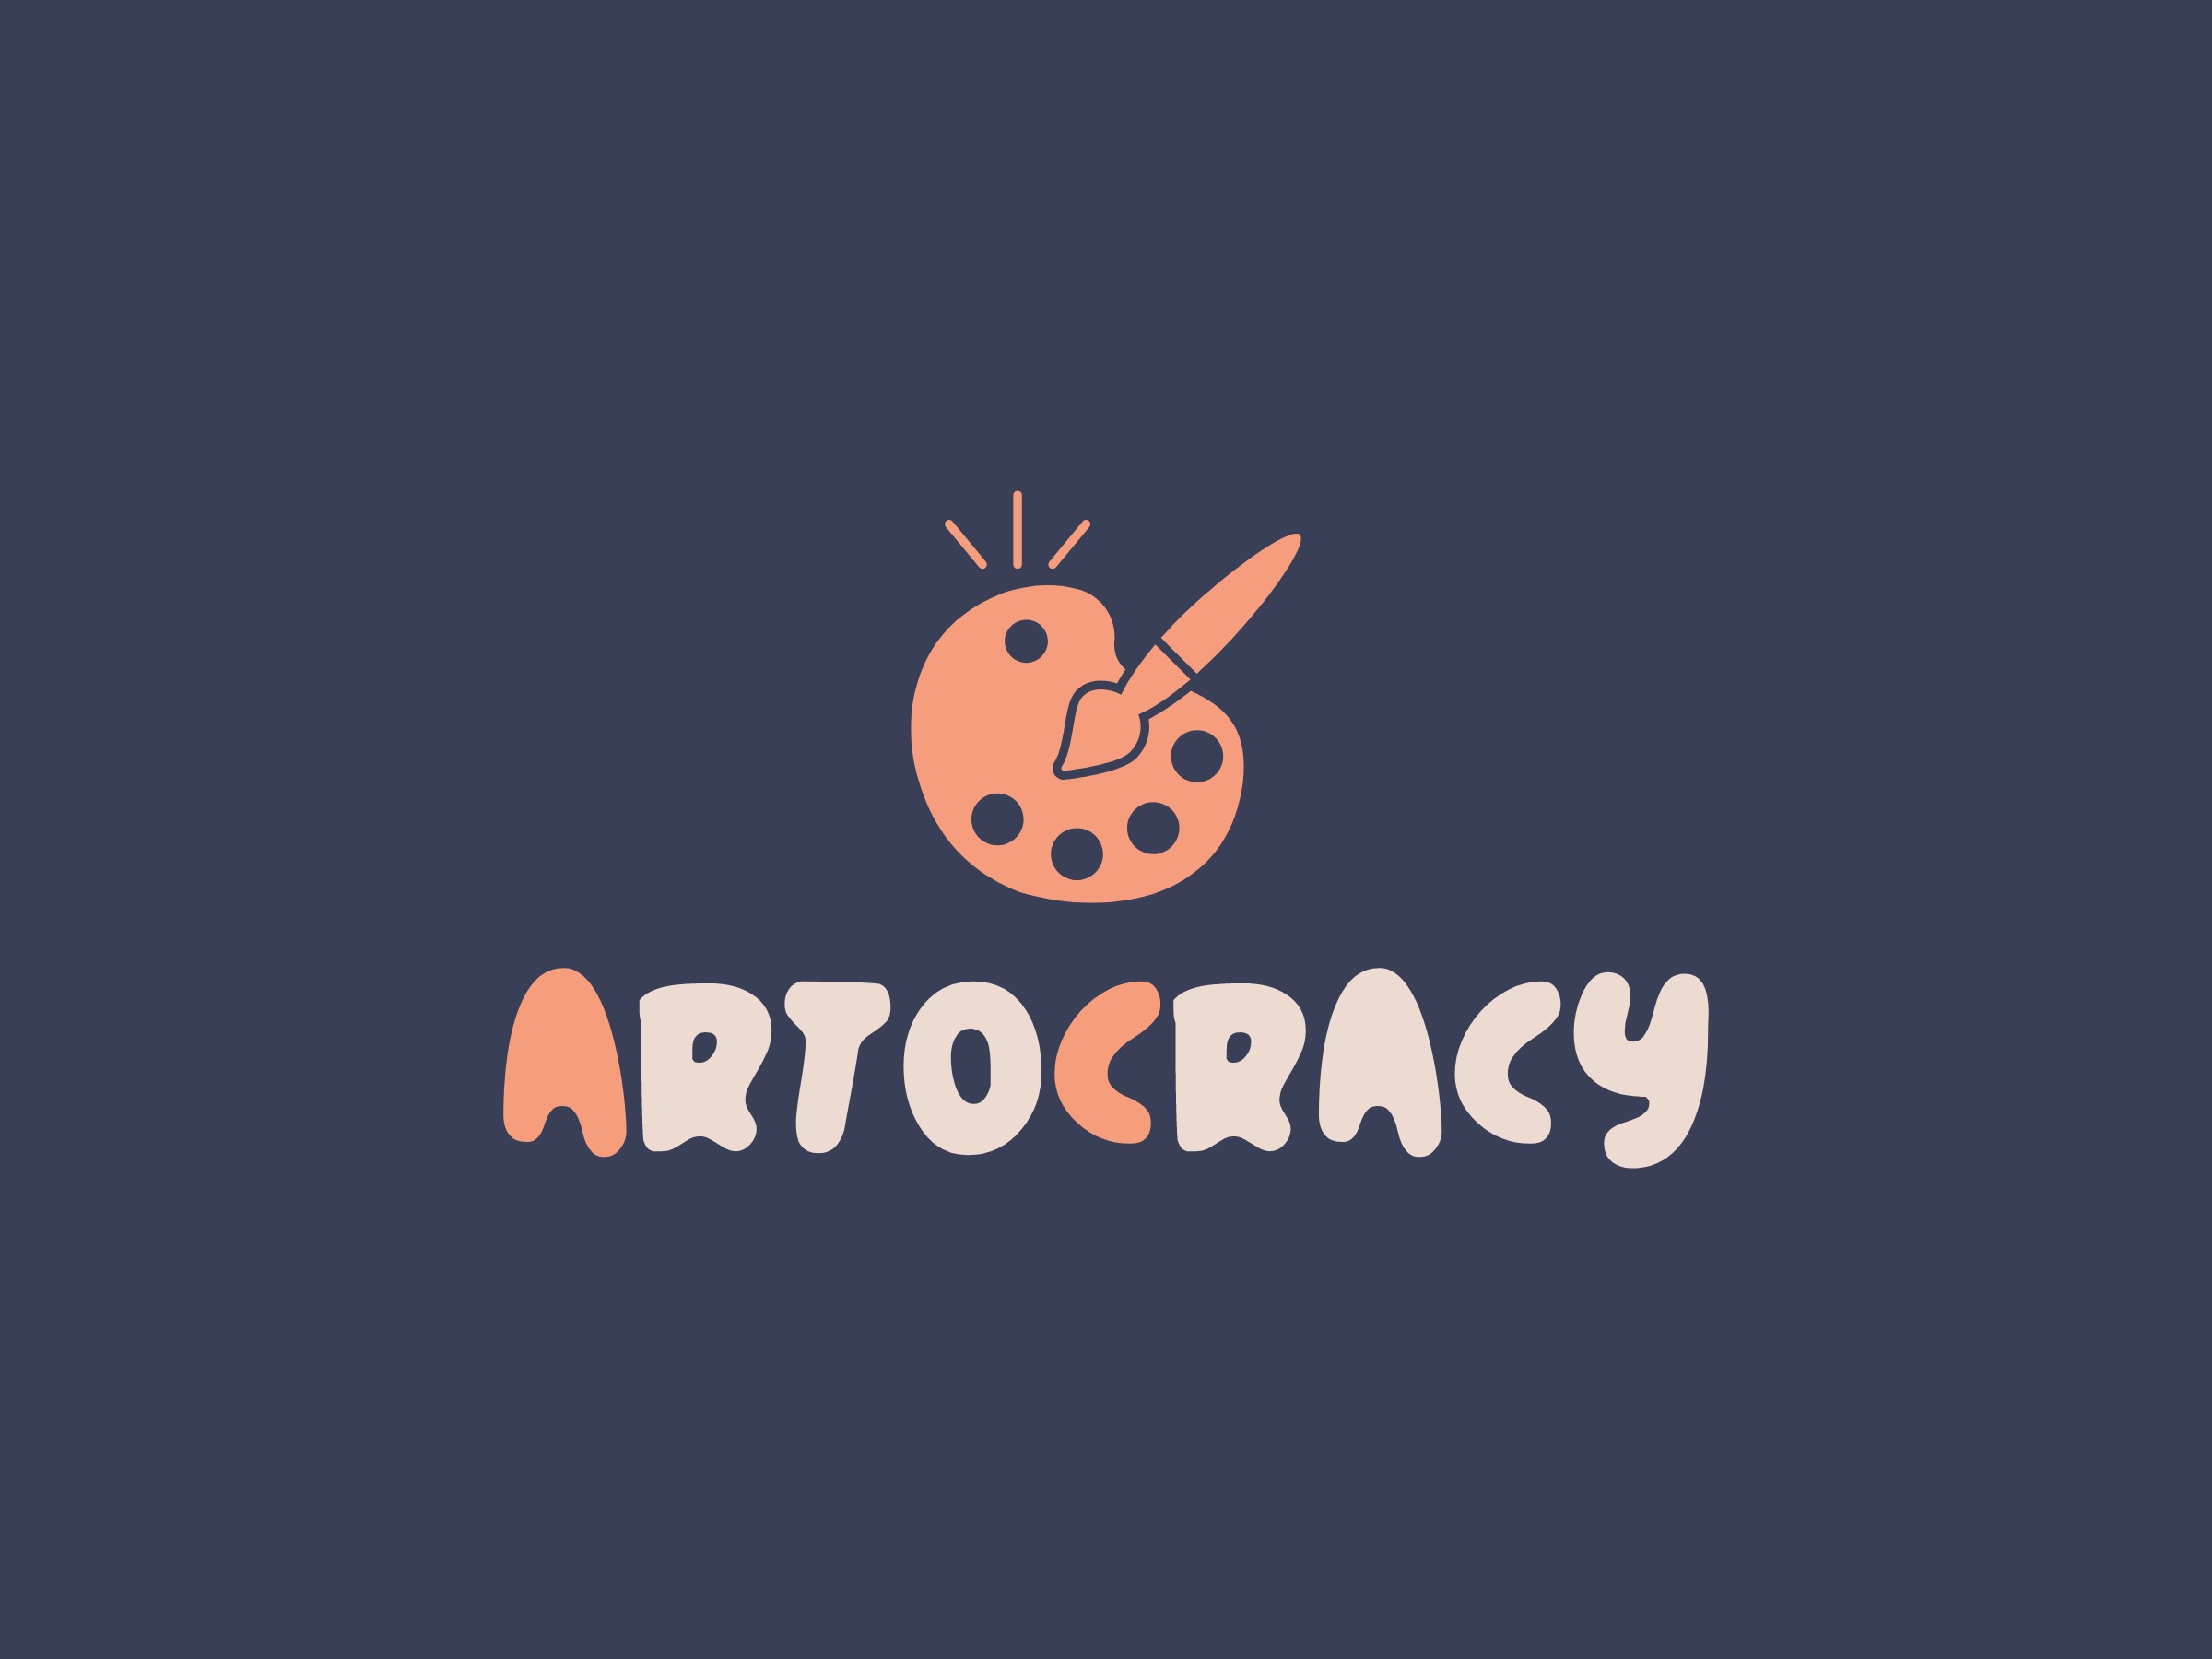 Artocracy logo design